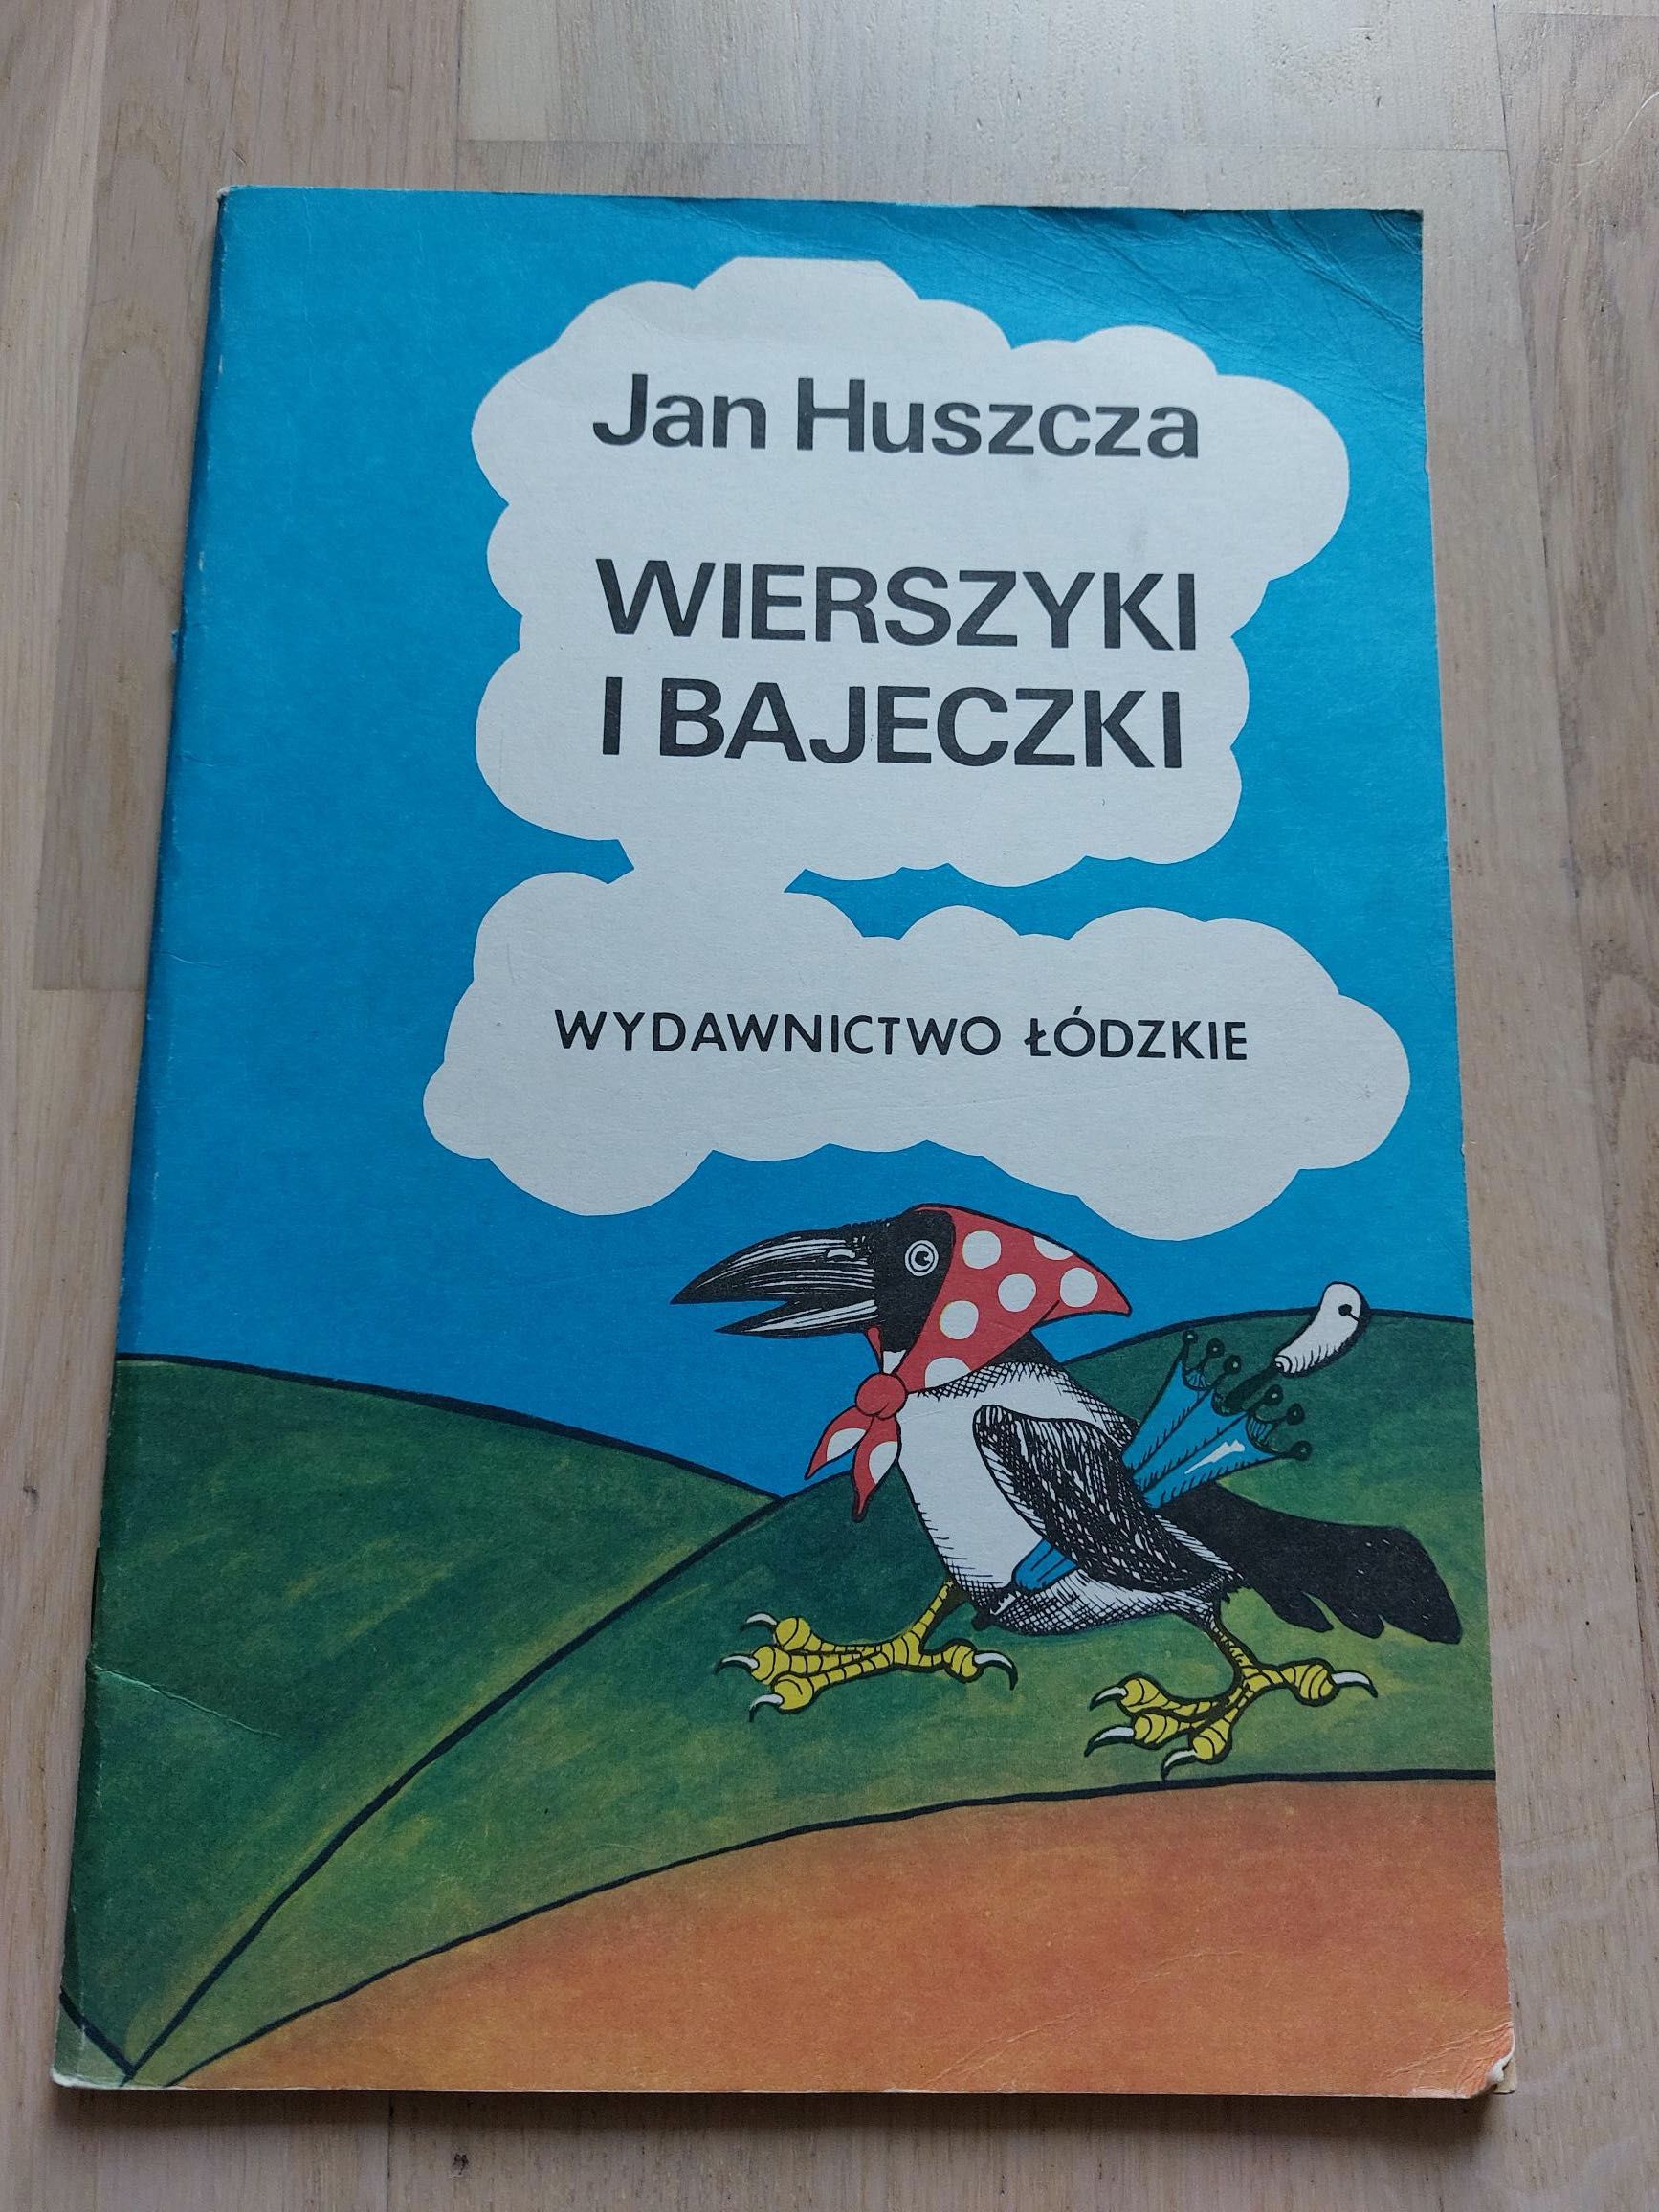 Jan Huszcza, Wierszyki i bajeczki, książka, Wydawnictwo Łódzkie 1984